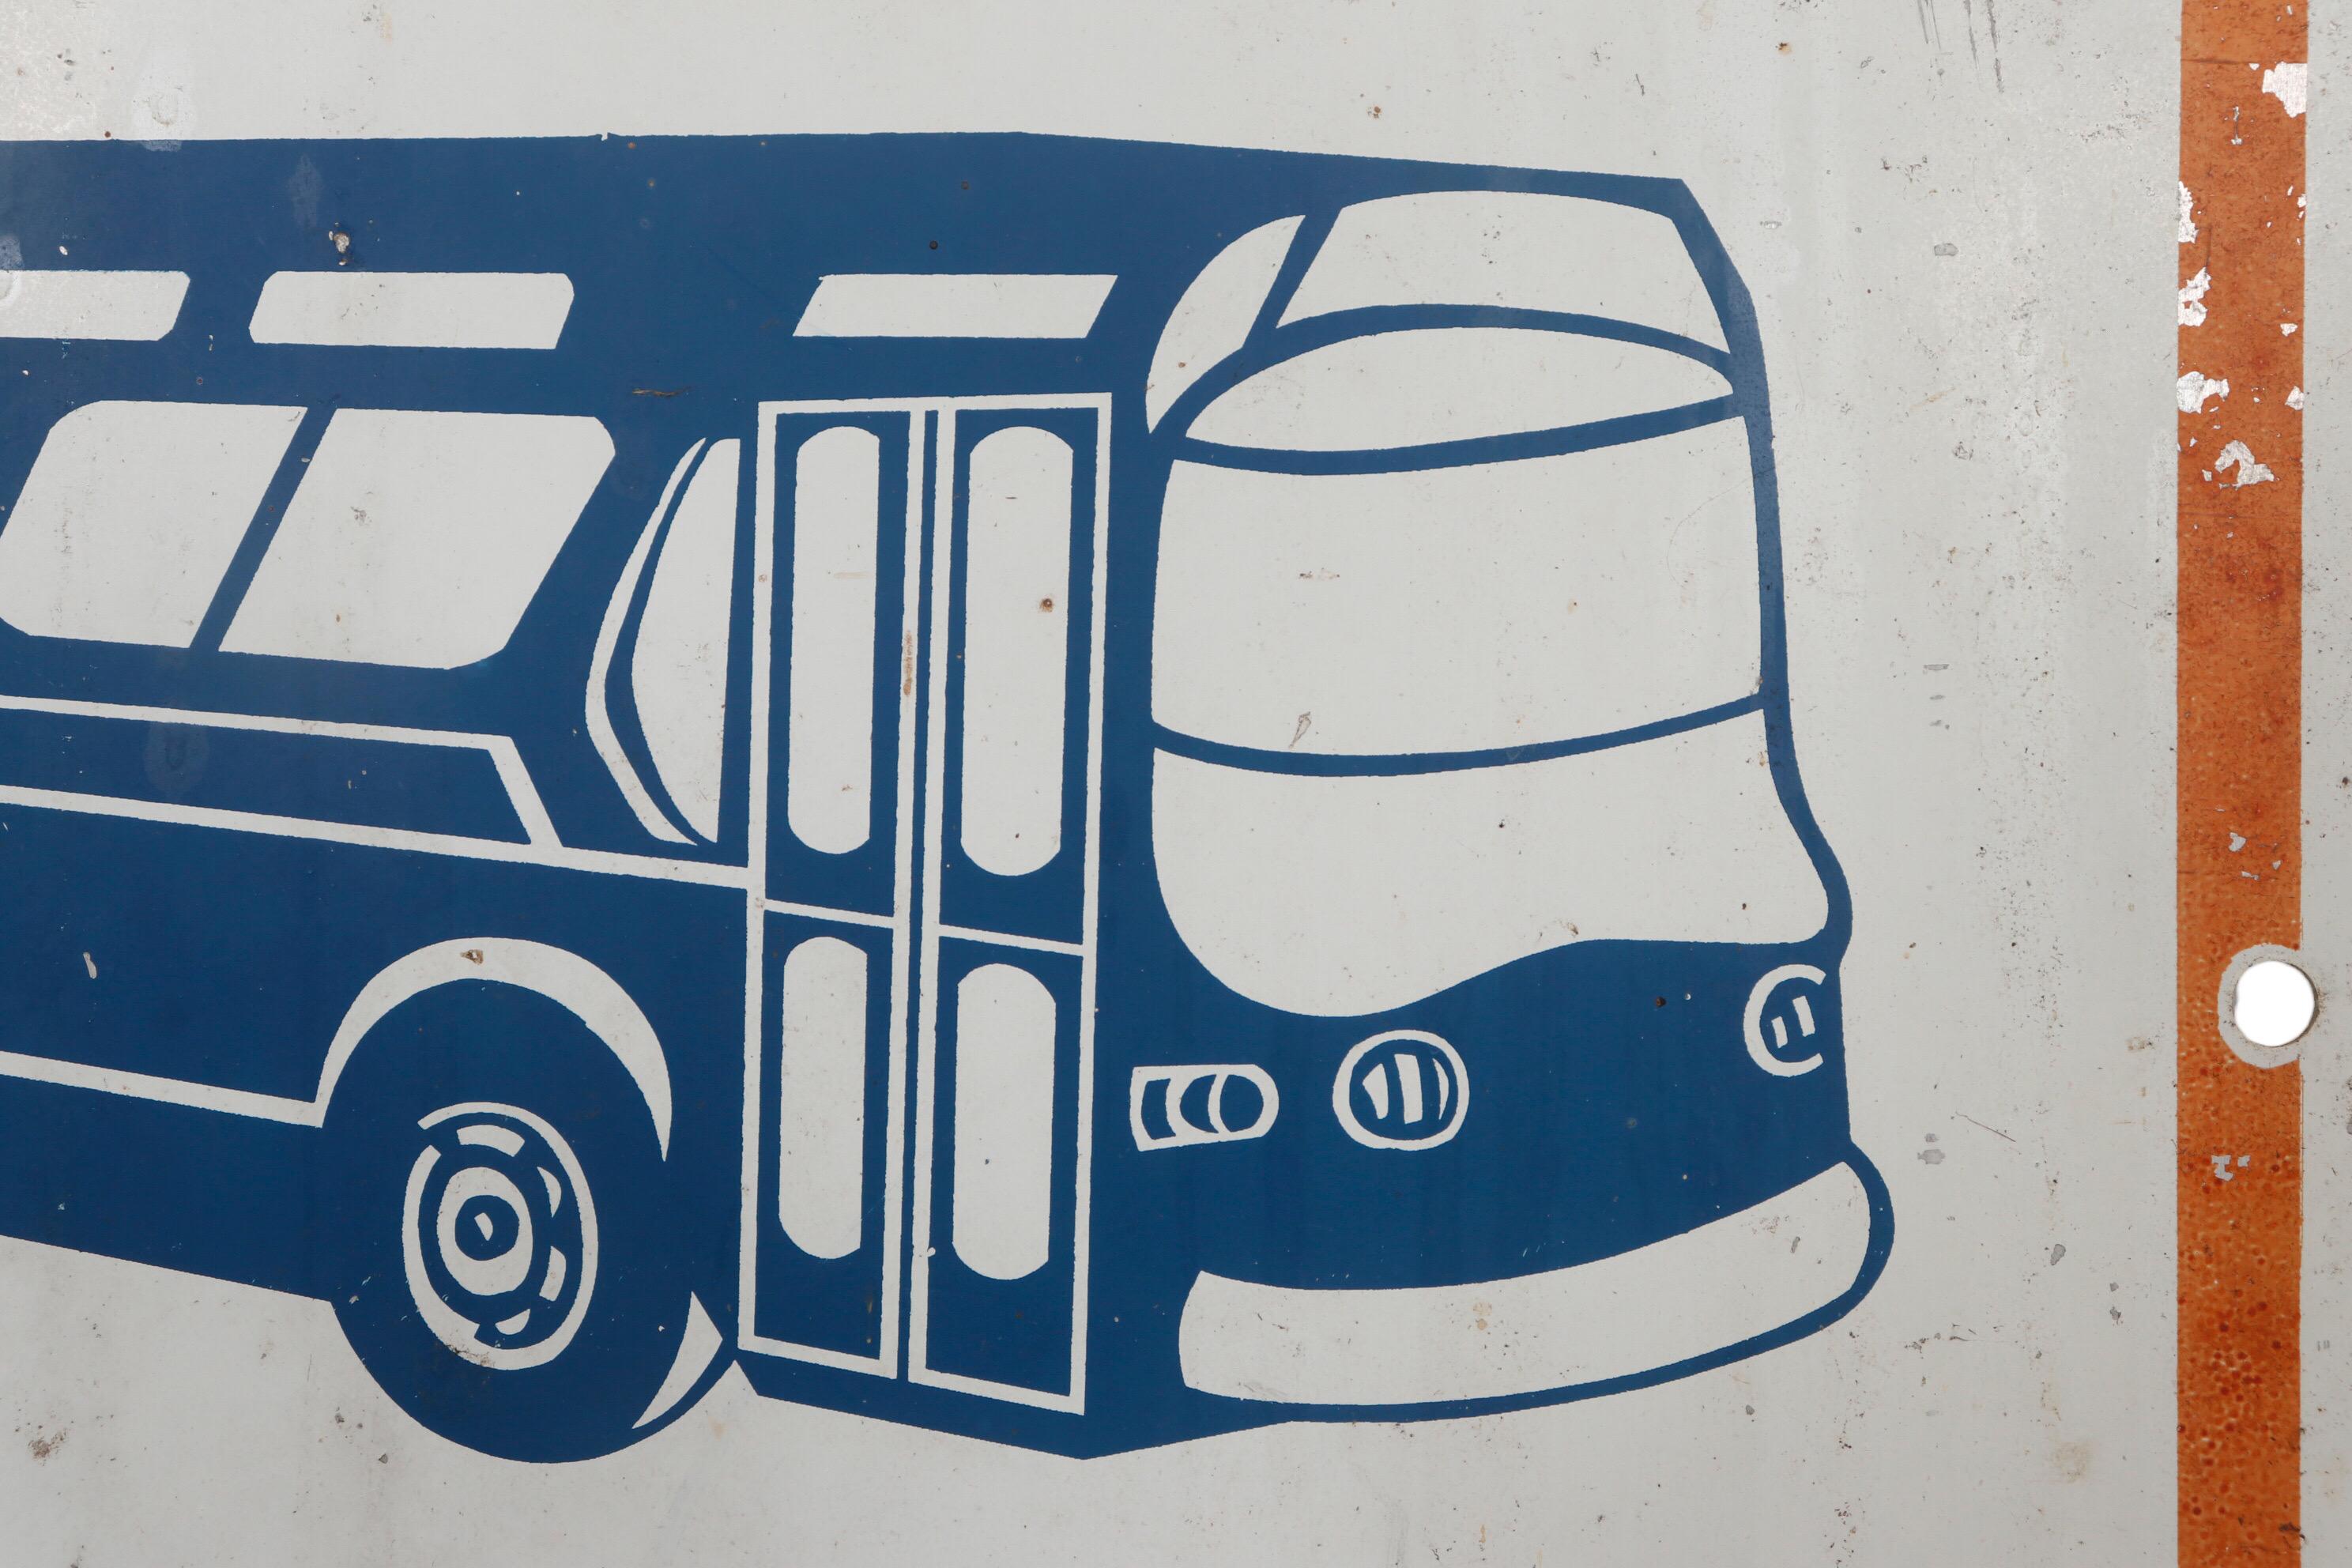 Ein New Yorker Bushaltestellenschild aus den 1970er Jahren aus Metall. Ein blauer, stilisierter Art-Déco-Bus steht in einem weißen Rechteck über den Worten 